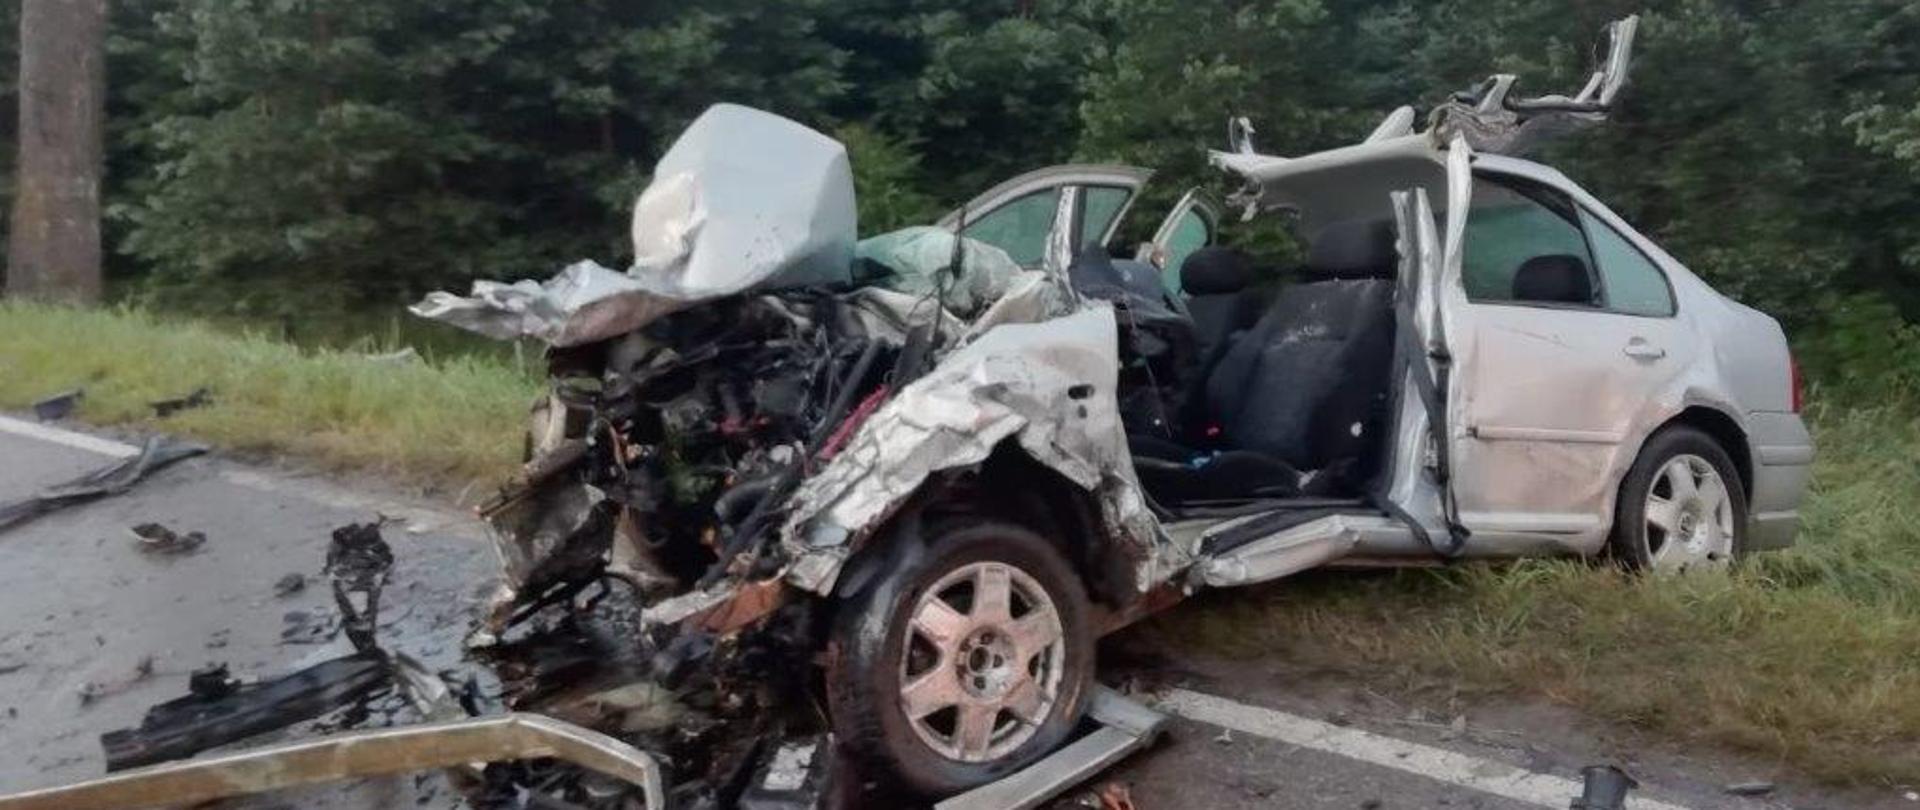 Zdjęcie przedstawia rozbity samochód osobowy znajdujący się częściowo poza pasem jezdni